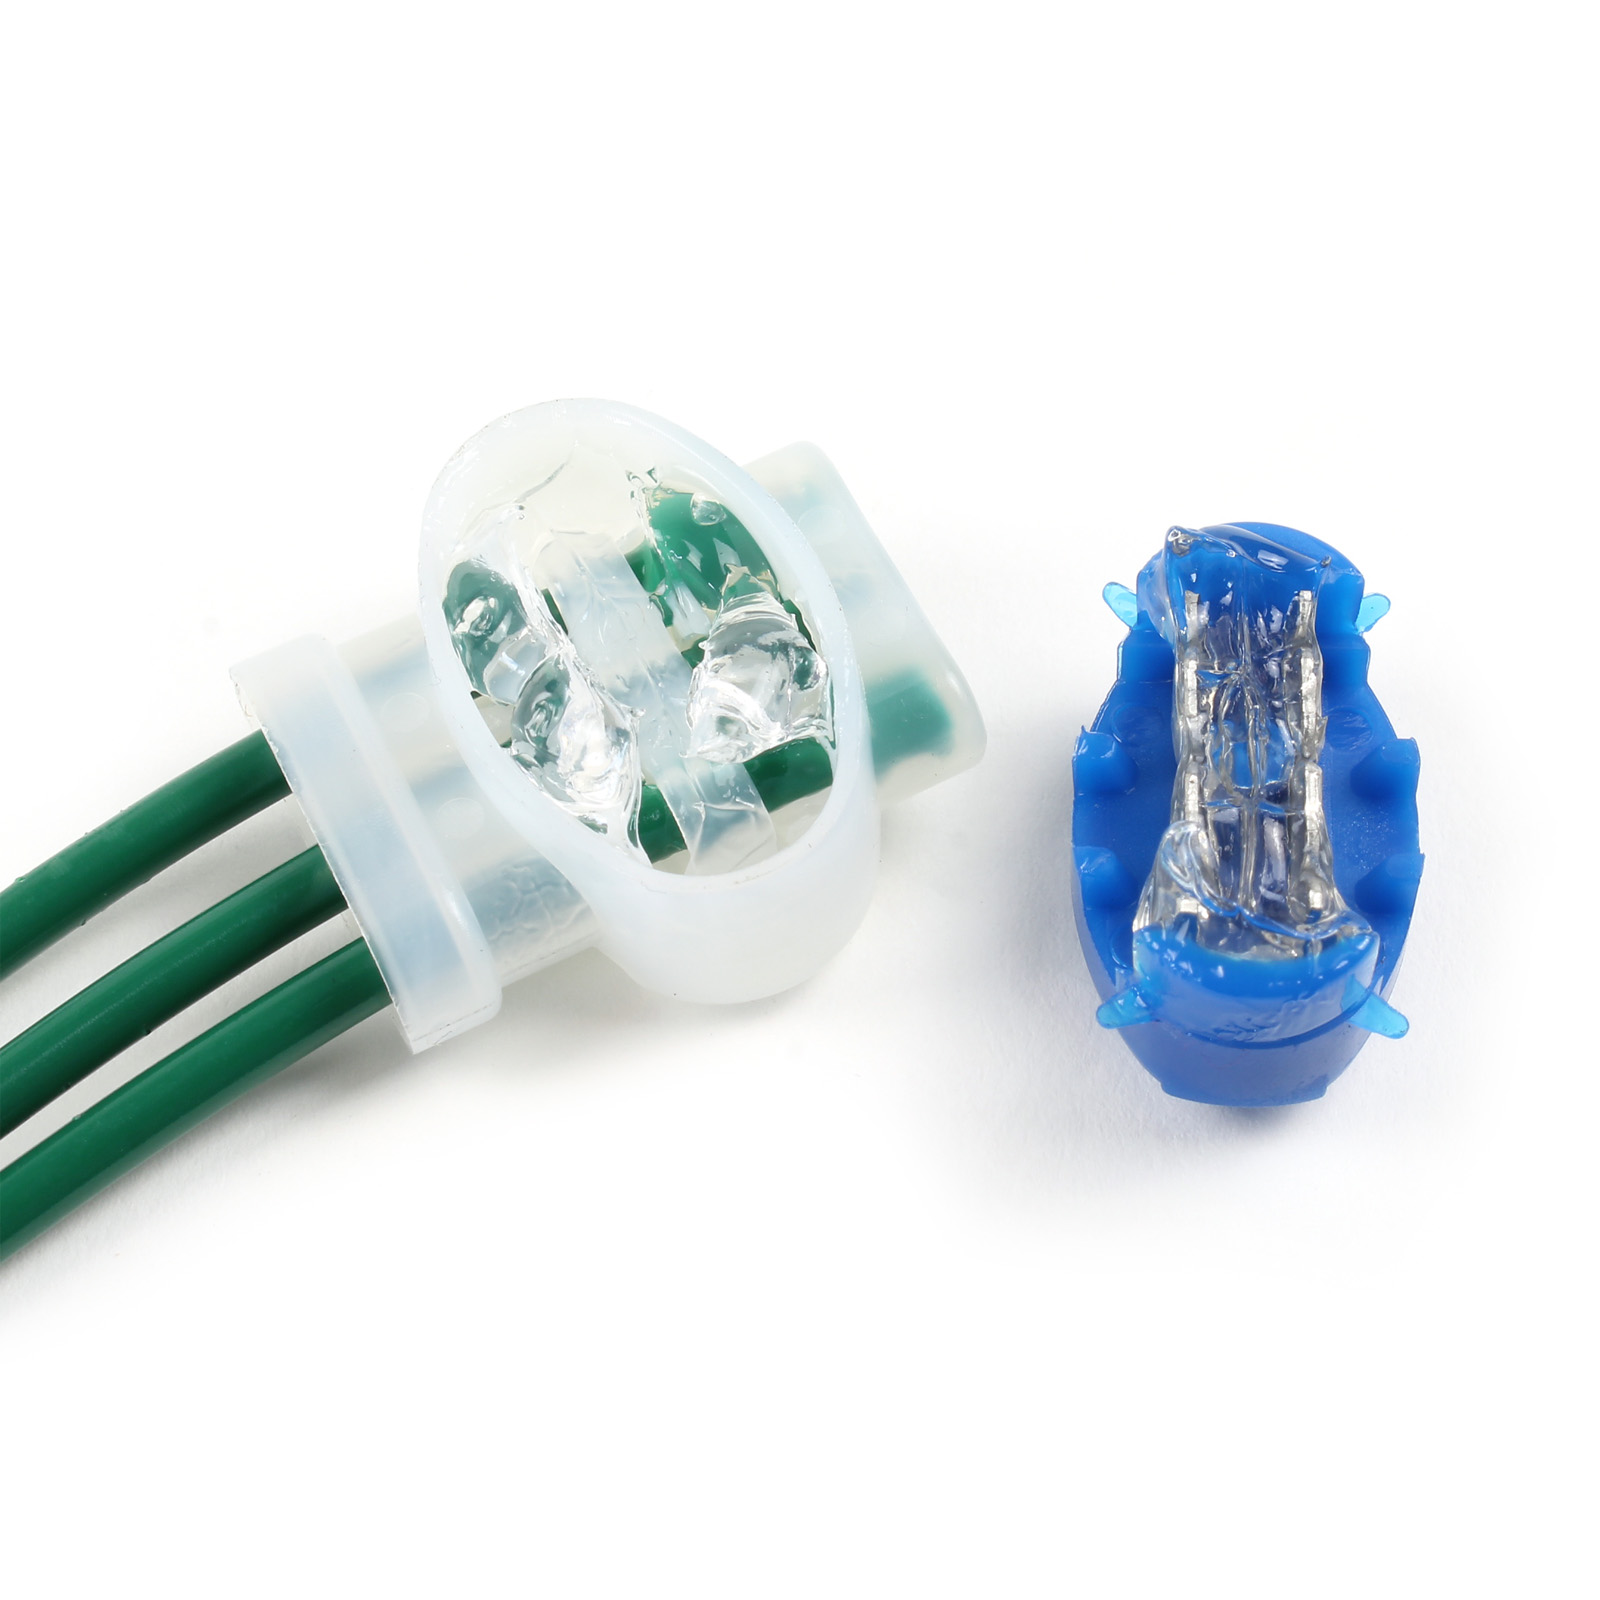 Connecteurs de câble / Connecteurs de fil / Connecteurs de gel pour câble  périphérique